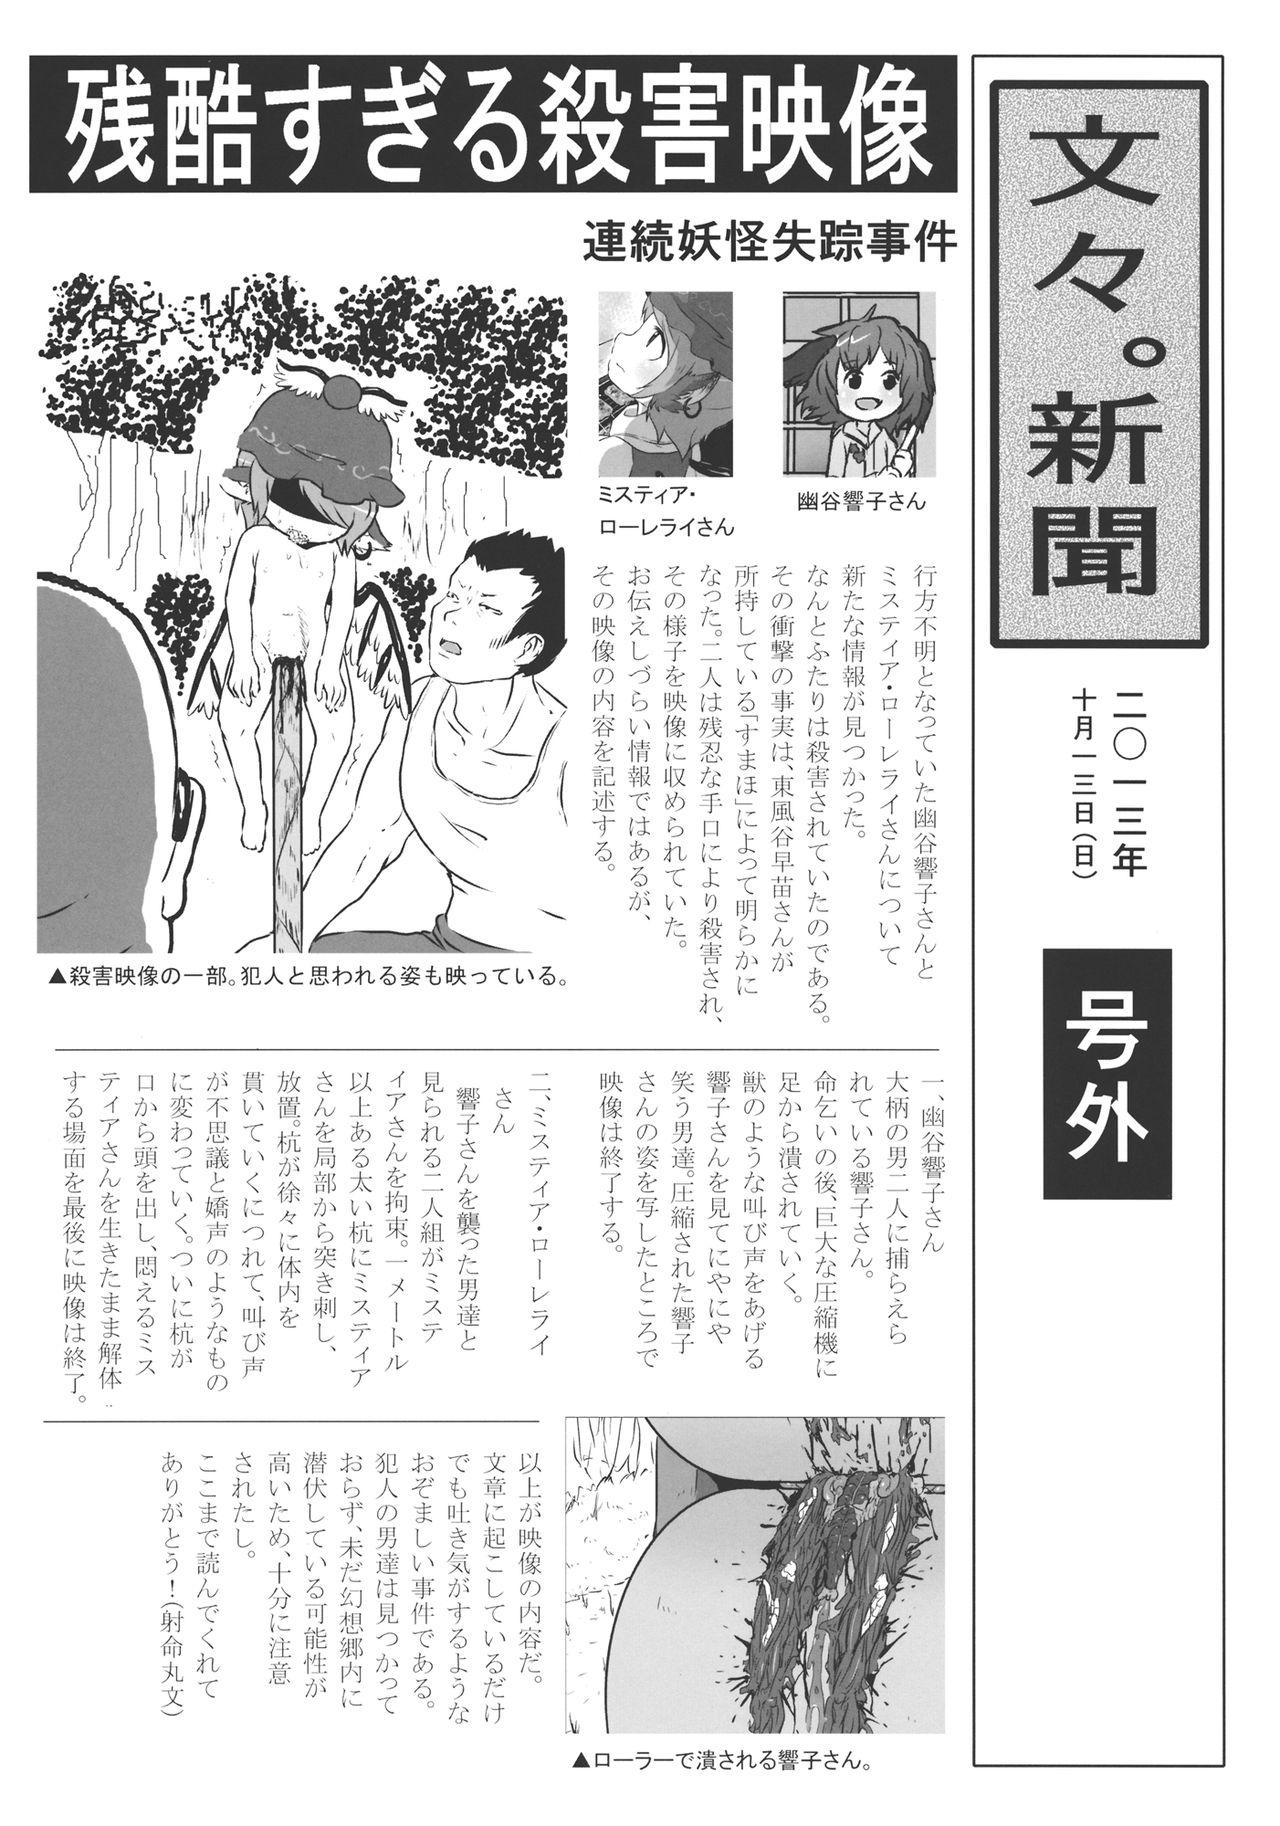 Safada (Kouroumu 9) [02 (Harasaki)] (Kojin Satsuei)(Touhou)(Kouroumu 9)[02] Touhou snuff vol.3 Kawashiro Nitori (Mushuusei) (Loli-kei Youjo no Kirei na Hadaka wo Suki Houdai shichai mashita!).avi (Touhou Project) [布洛基个人汉化] - Touhou project Blowing - Page 4